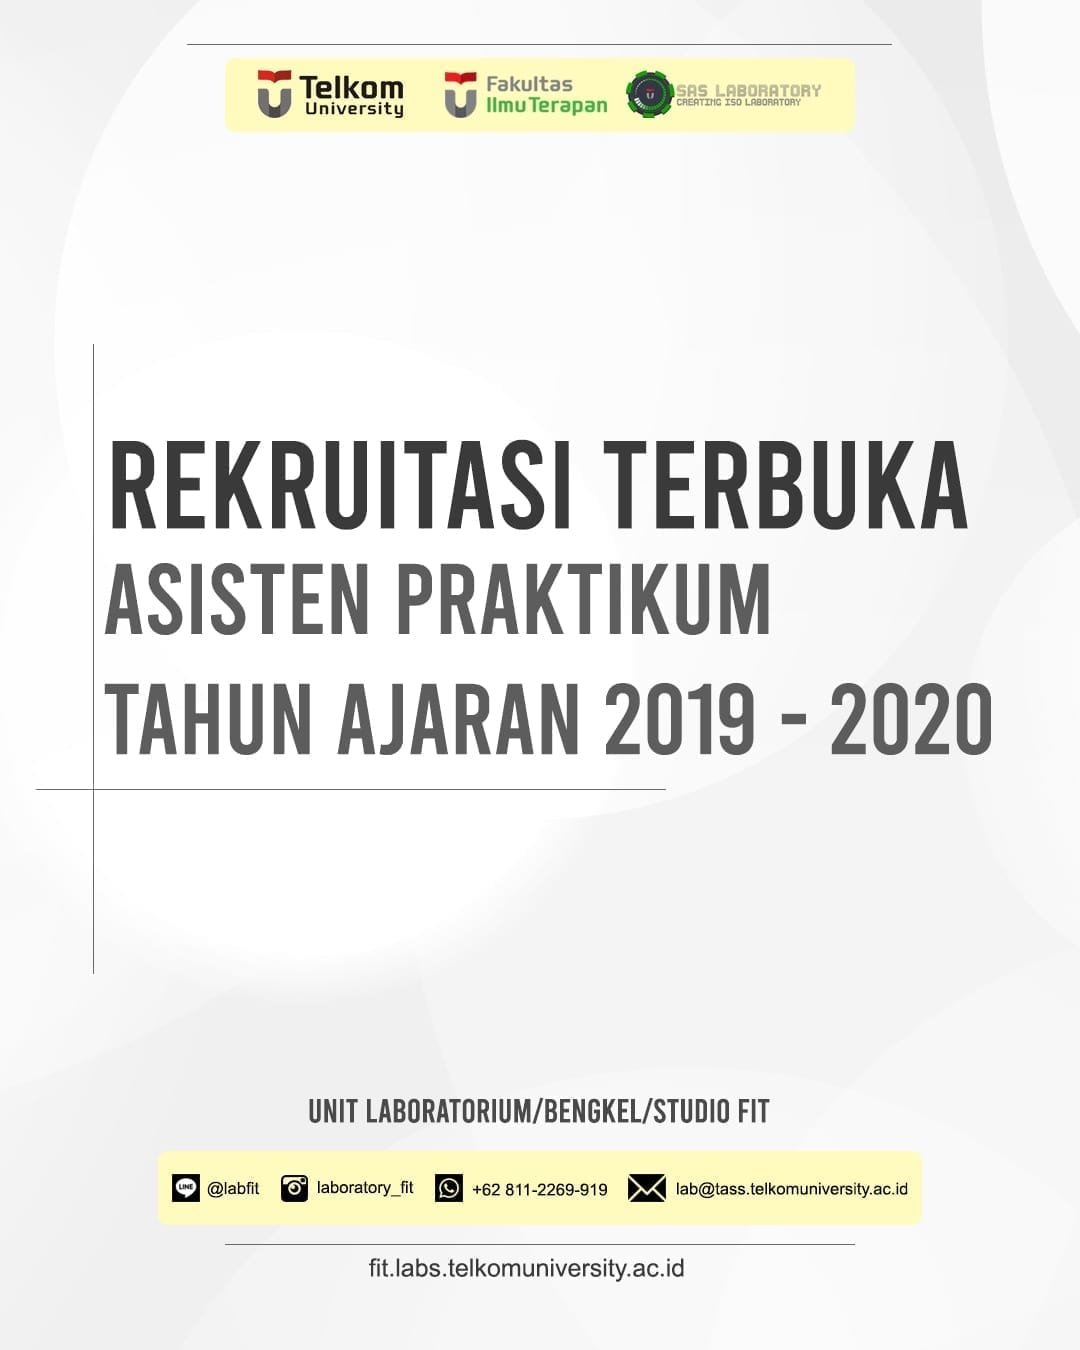 [PENGUMUMAN] Rekruitasi Asisten Praktikum FIT Semester Genap TA 2019/2020